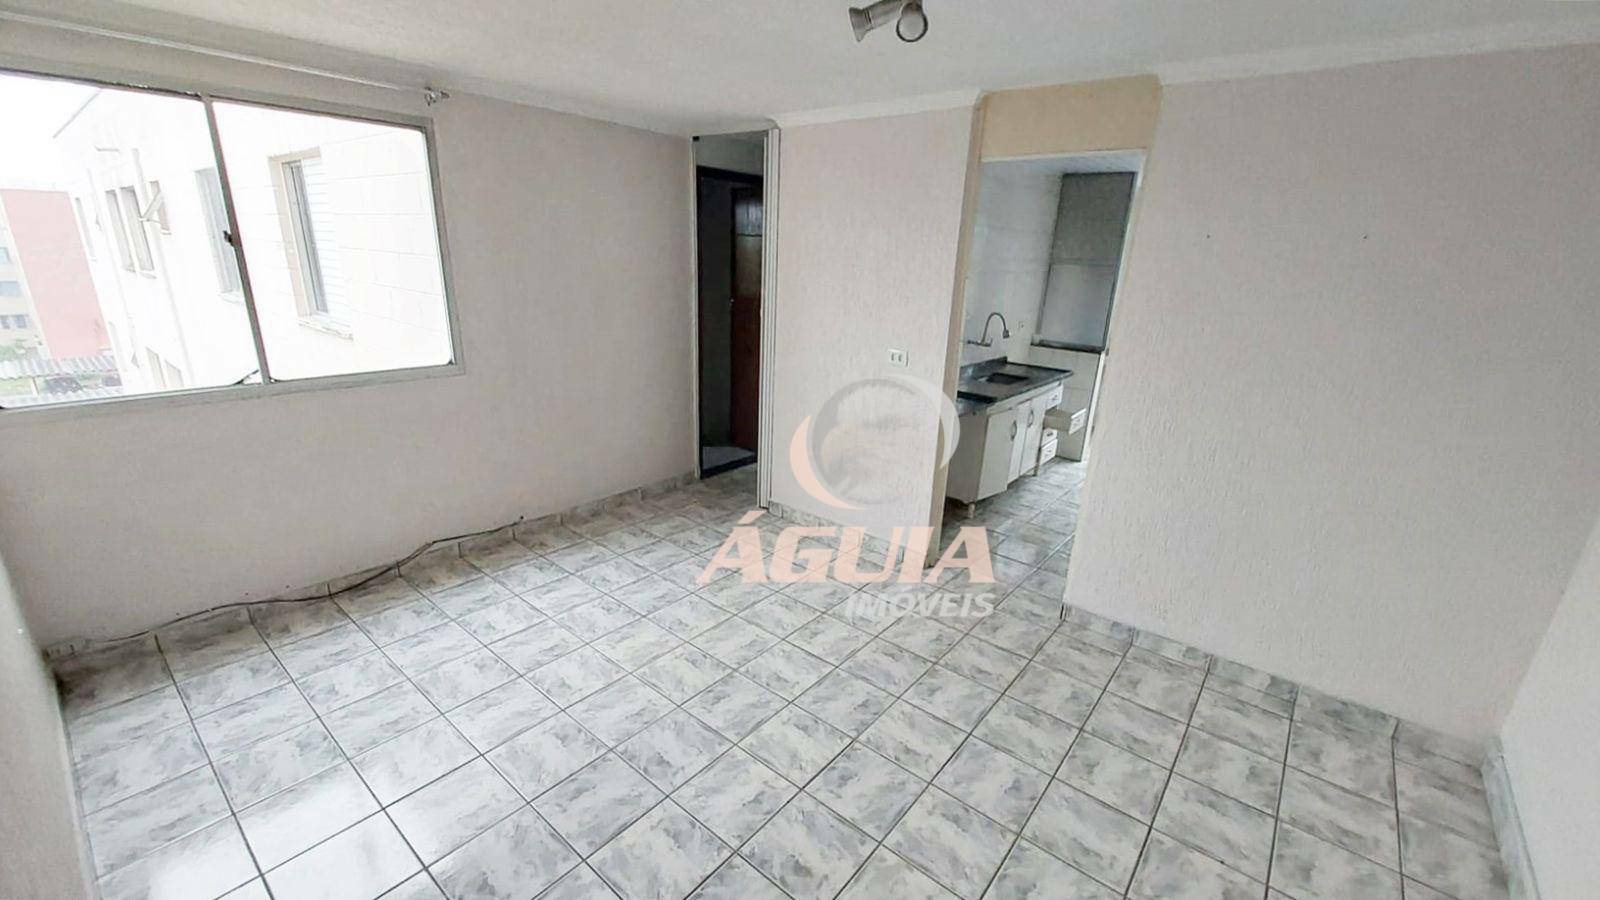 Apartamento com 2 dormitórios à venda, 55 m² por R$ 204.000,00 - Jardim Alvorada - Santo André/SP